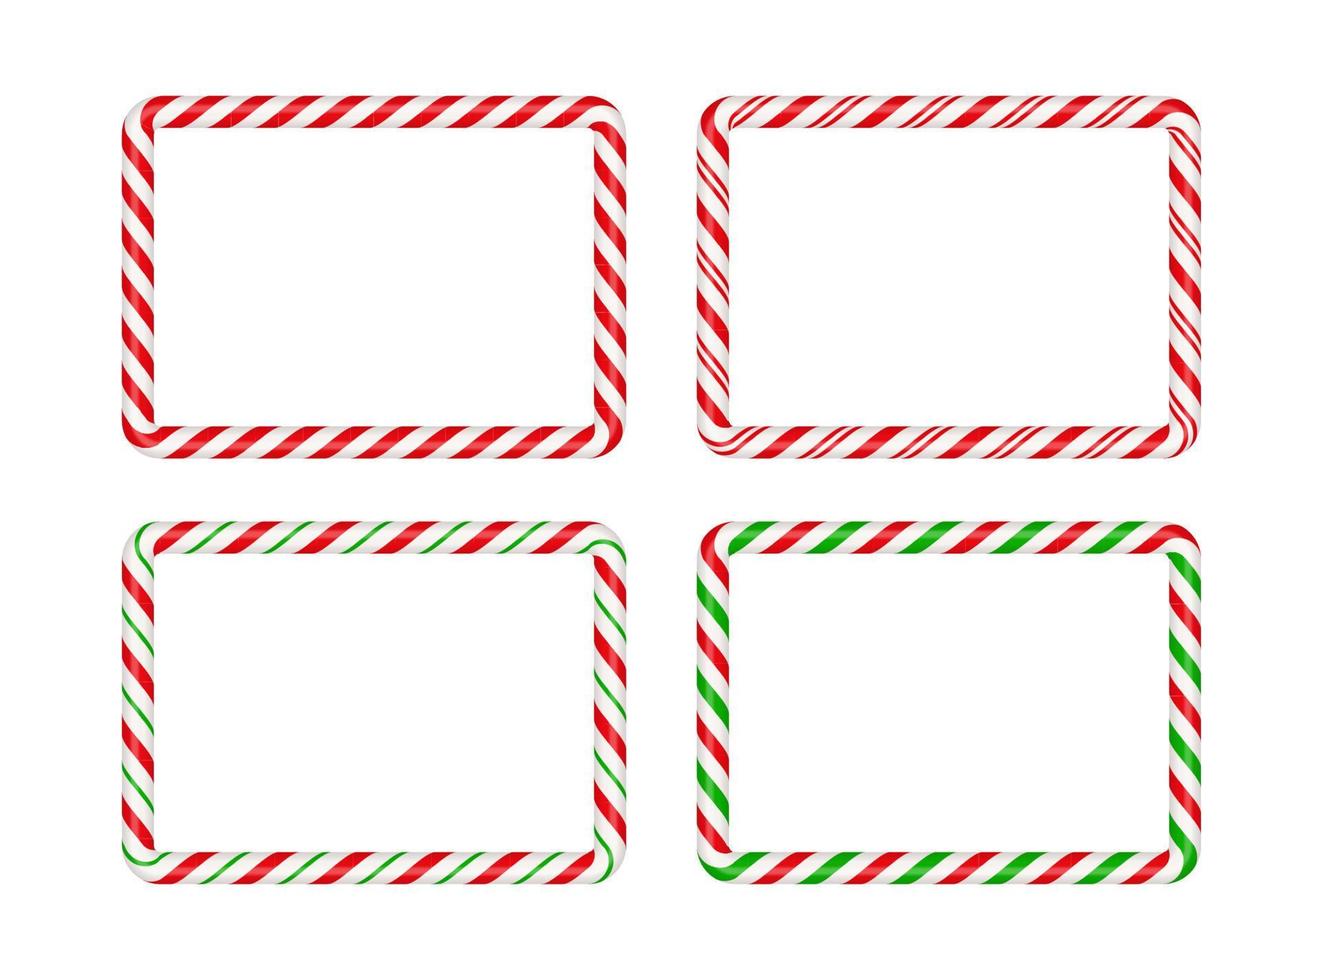 Weihnachtszuckerstangen-Rechteckrahmen mit rotem und grünem Streifen. weihnachtsgrenze mit gestreiftem bonbonlutschermuster. leere weihnachts- und neujahrsschablonenvektorillustration lokalisiert auf weißem hintergrund vektor